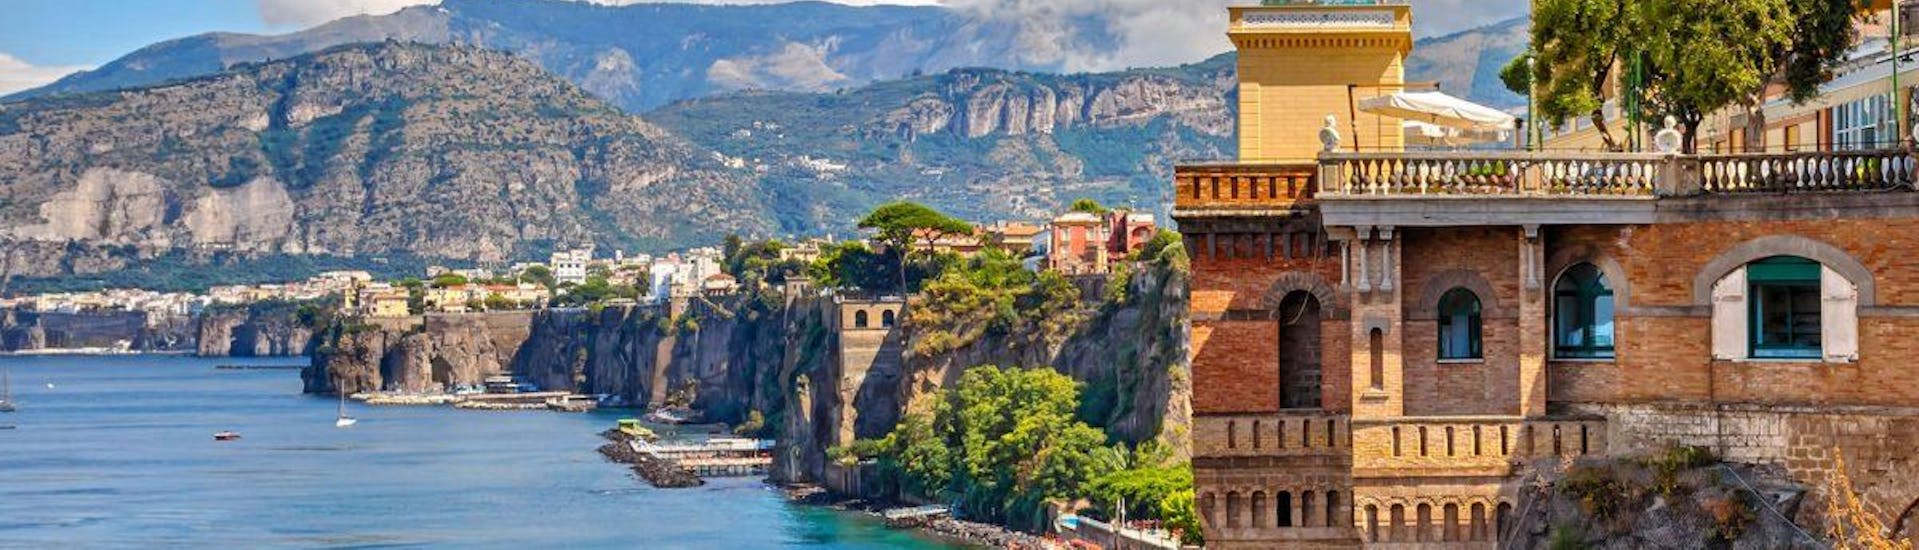 Amalfi est l'un des points forts que les participants peuvent admirer pendant l'excursion en bateau de Naples à Positano et Amalfi.